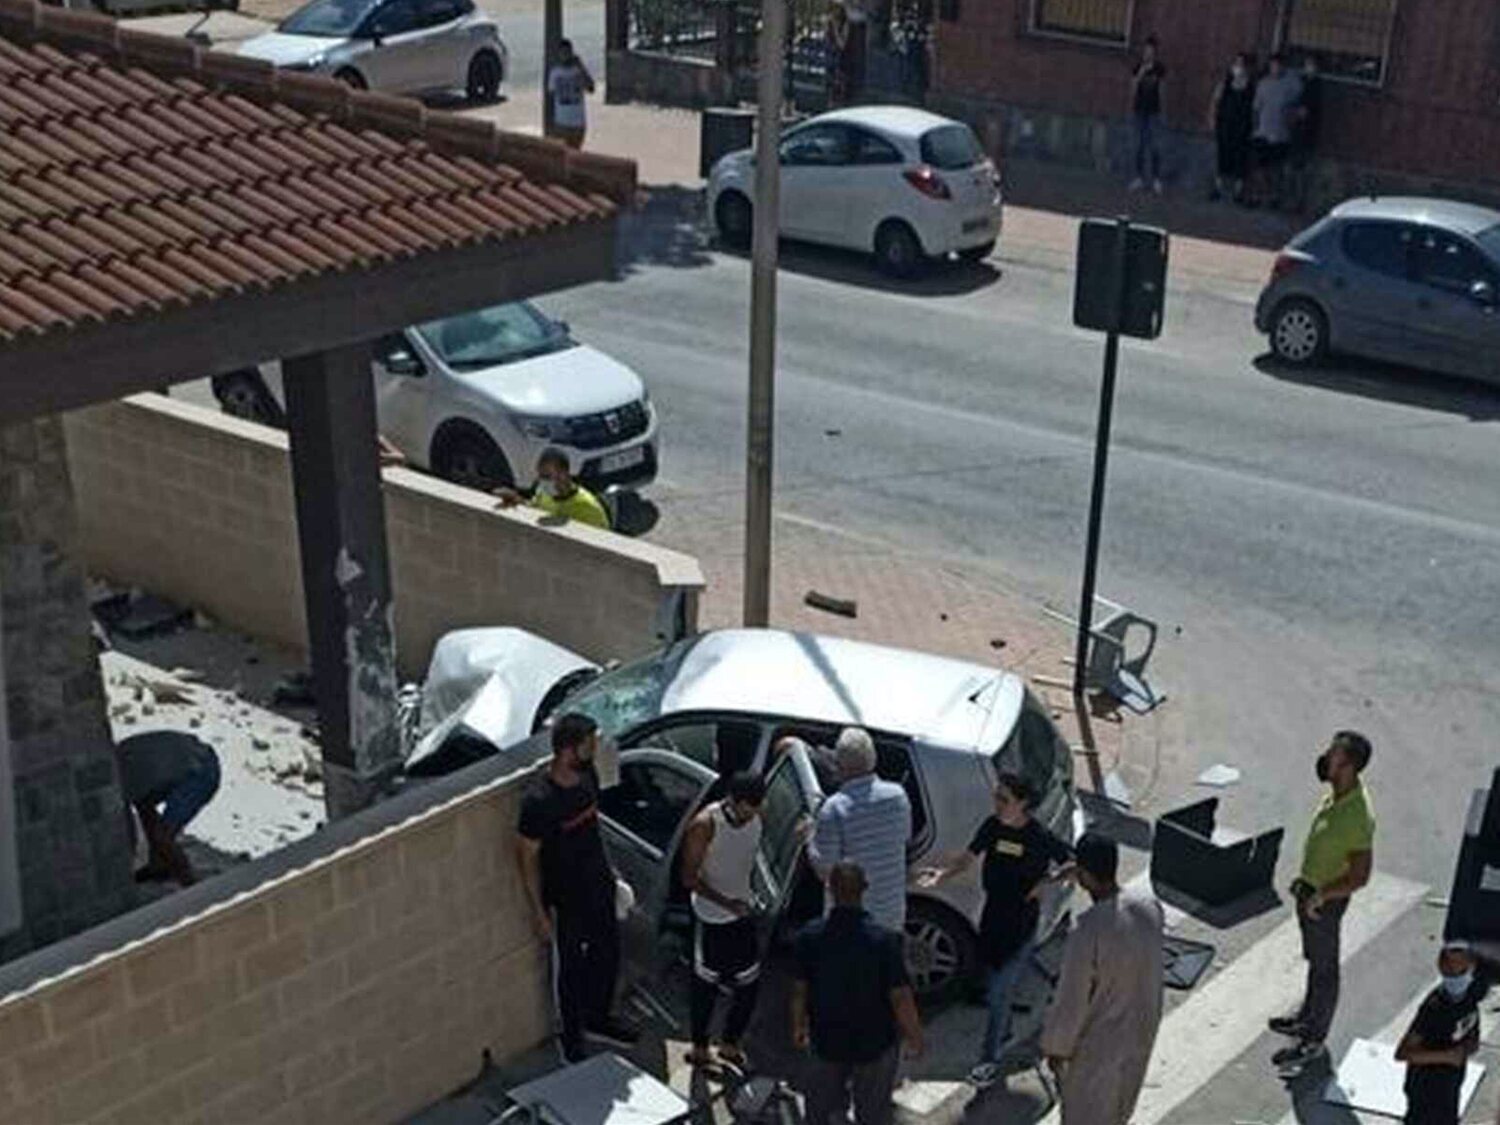 La Audiencia Nacional investiga como atentado yihadista el atropello en múltiple de Murcia